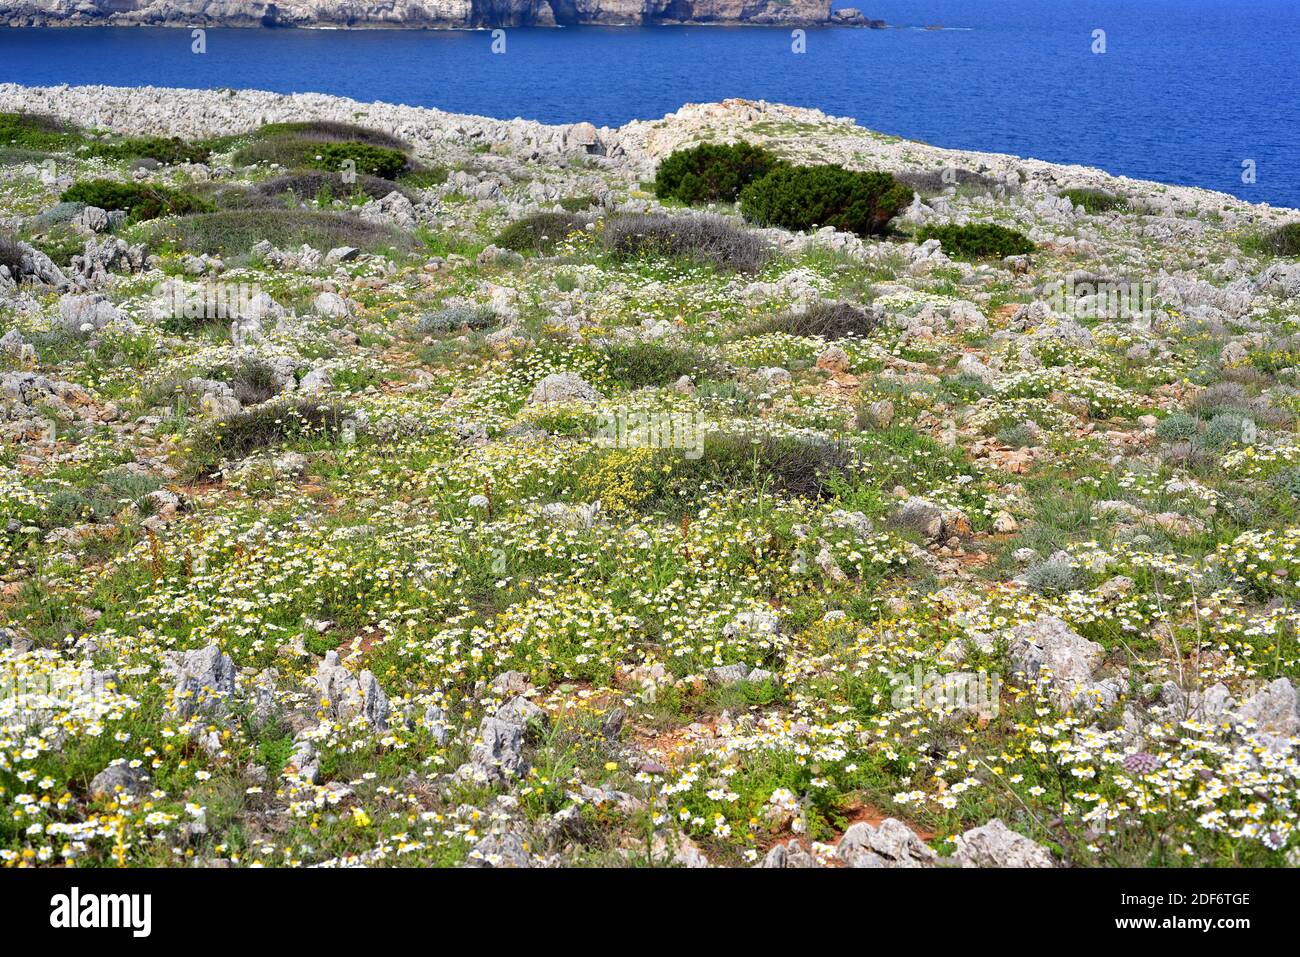 La camomilla di mare (Anthemis maritima) è un'erba perenne originaria del bacino mediterraneo occidentale. Questa foto è stata scattata a Cala Morell, Minorca, Foto Stock